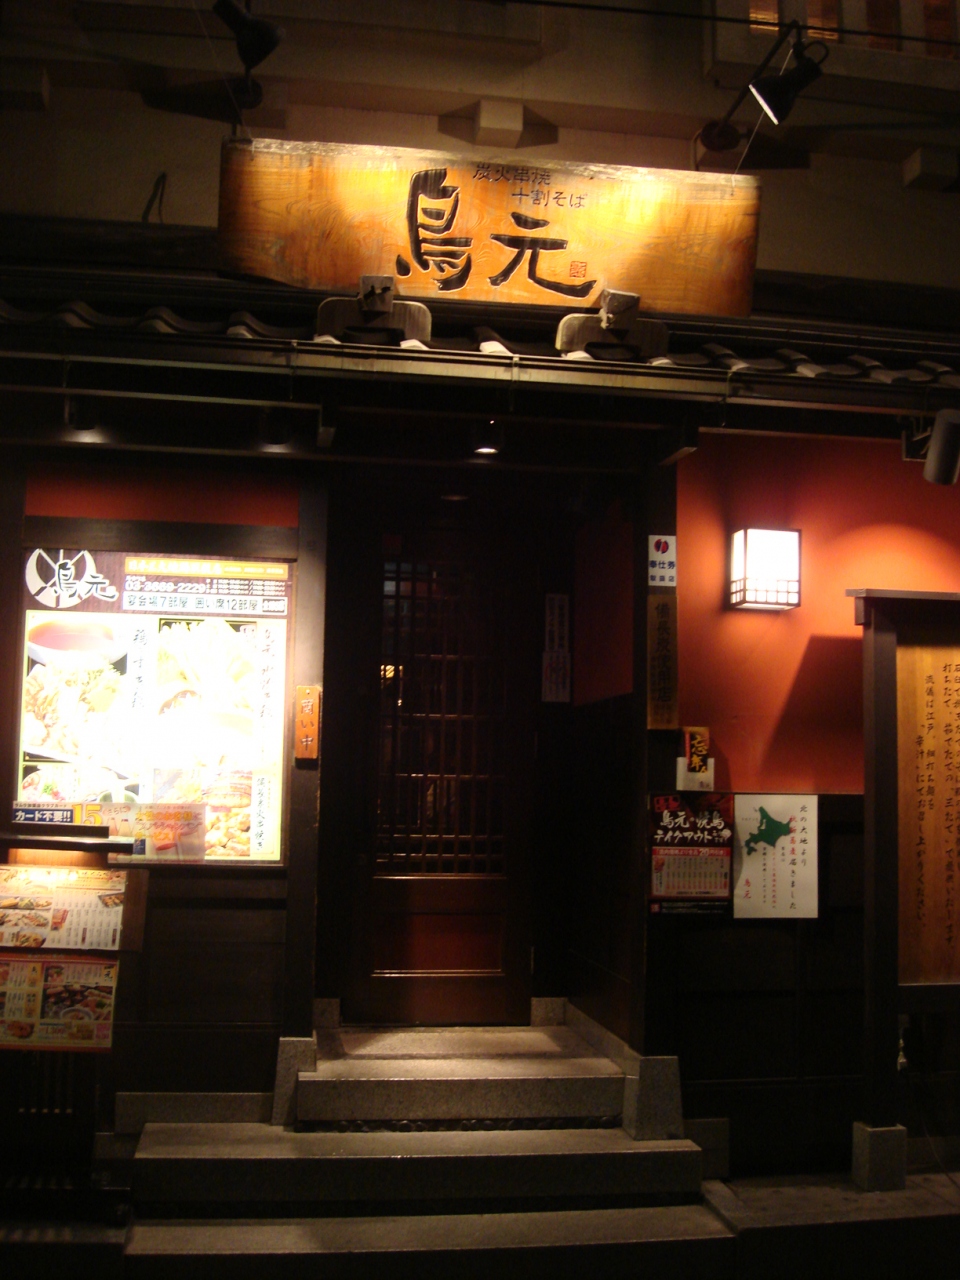 鳥元 馬喰町店 で焼き鳥を食べました 日本橋 東京 の旅行記 ブログ By ボジャー３号さん フォートラベル